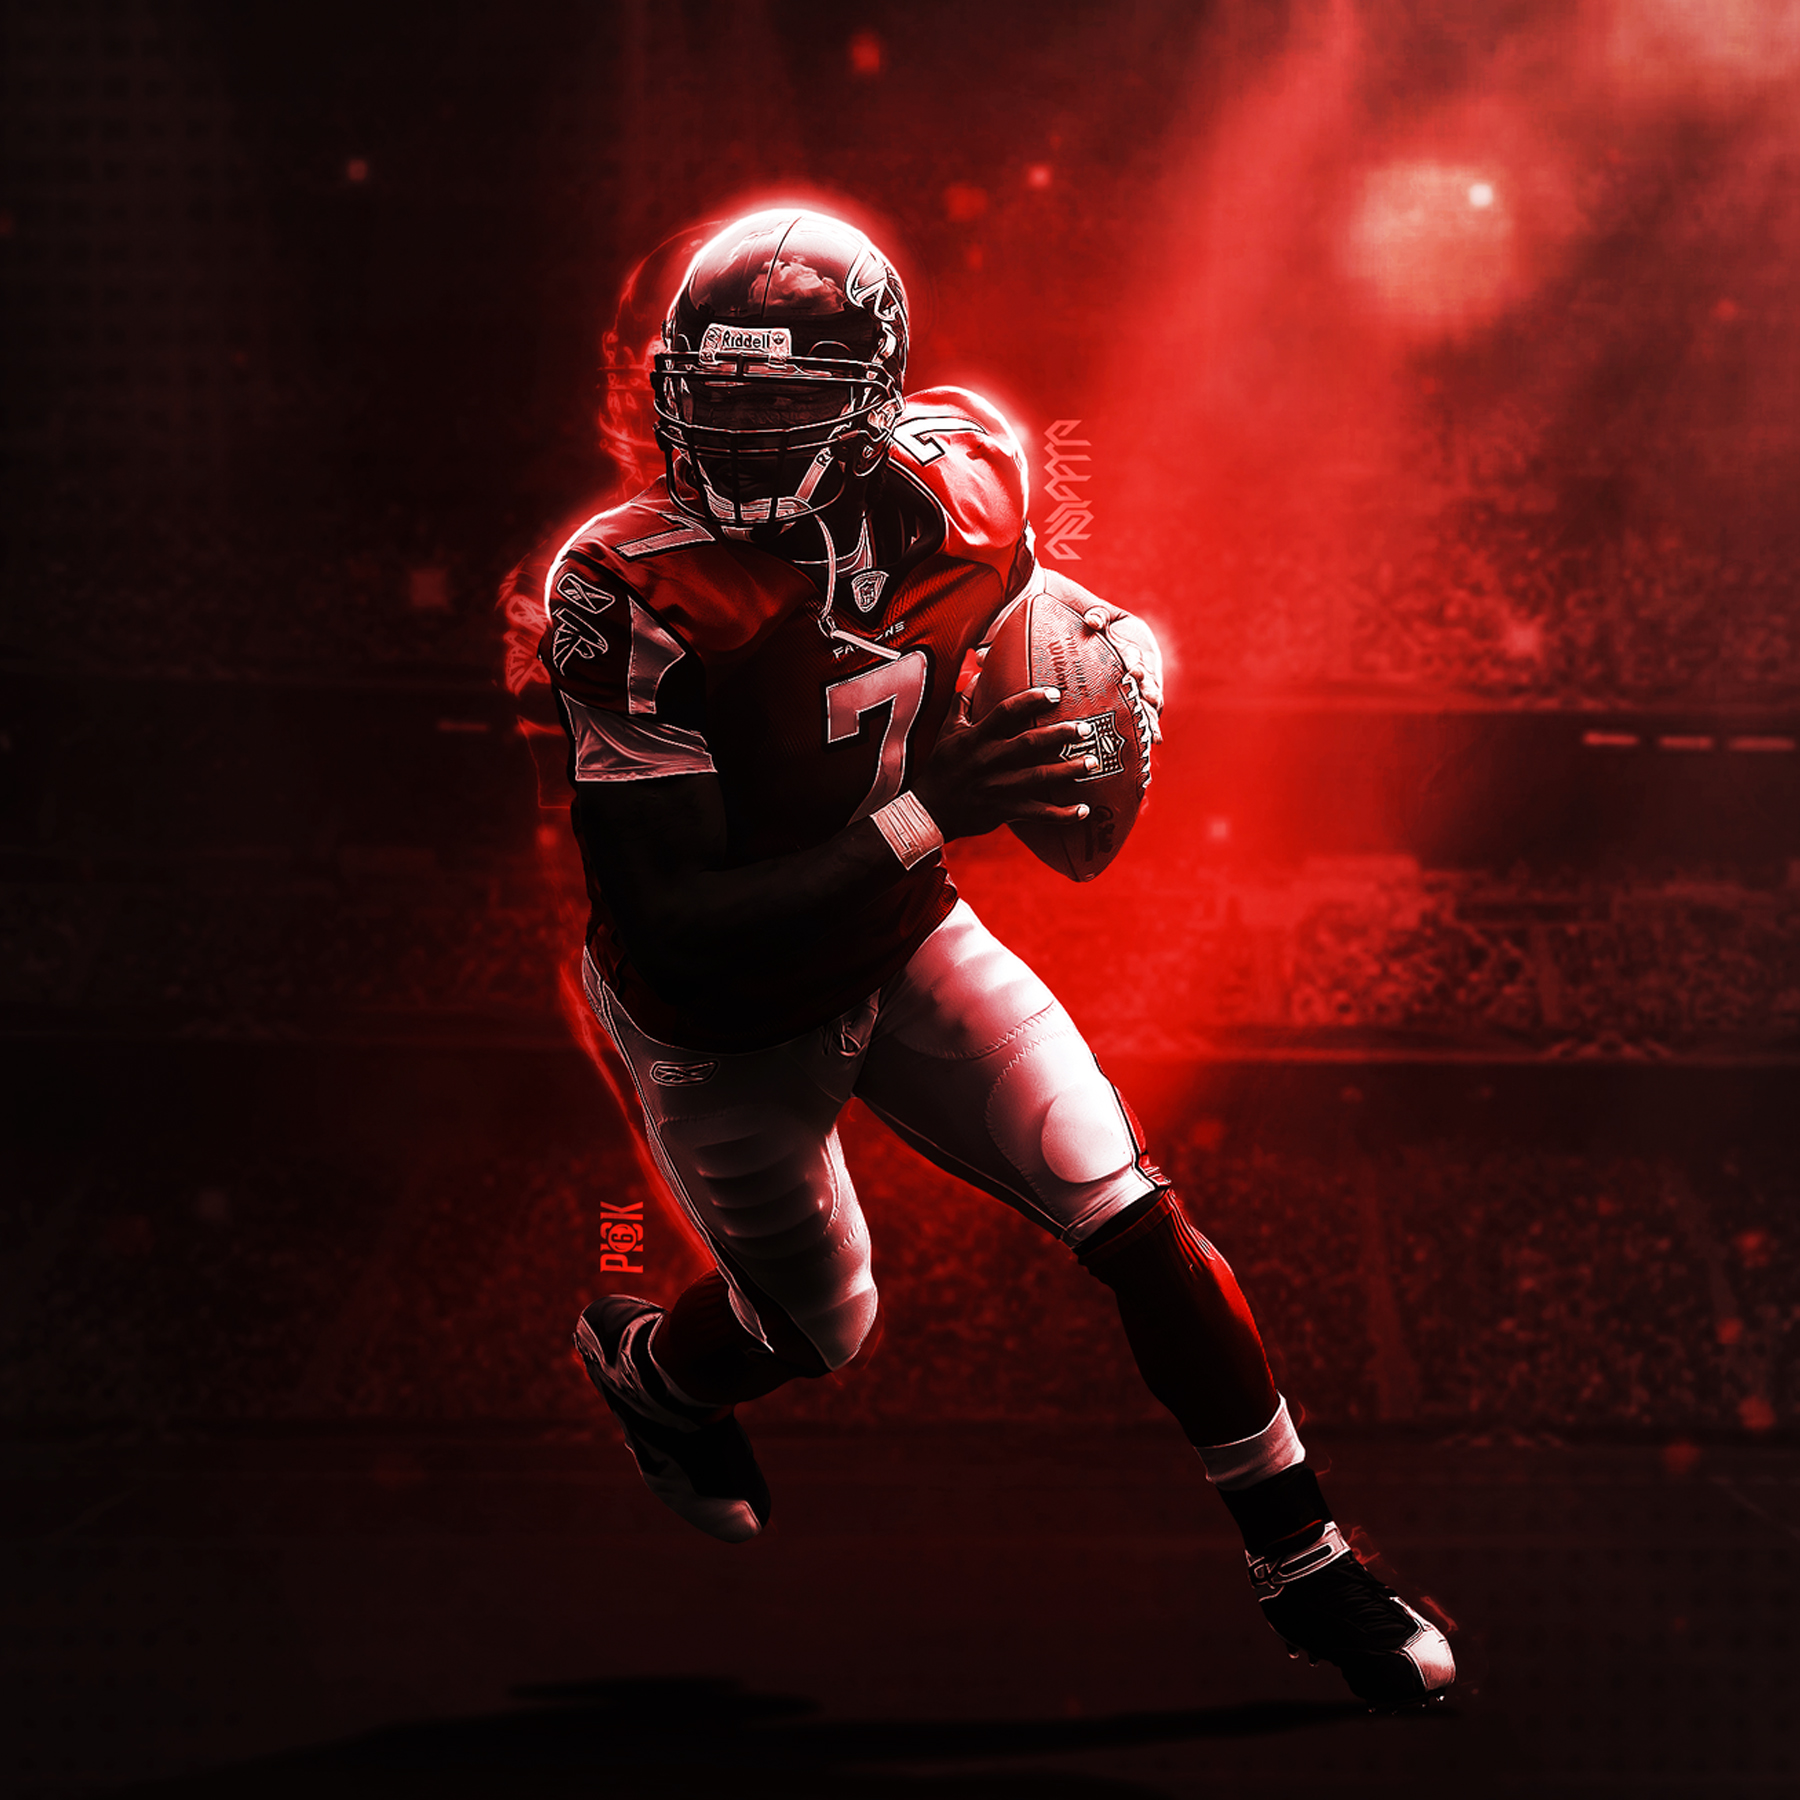 fond d'écran michael vick,rouge,football américain,illustration,personnage fictif,figurine